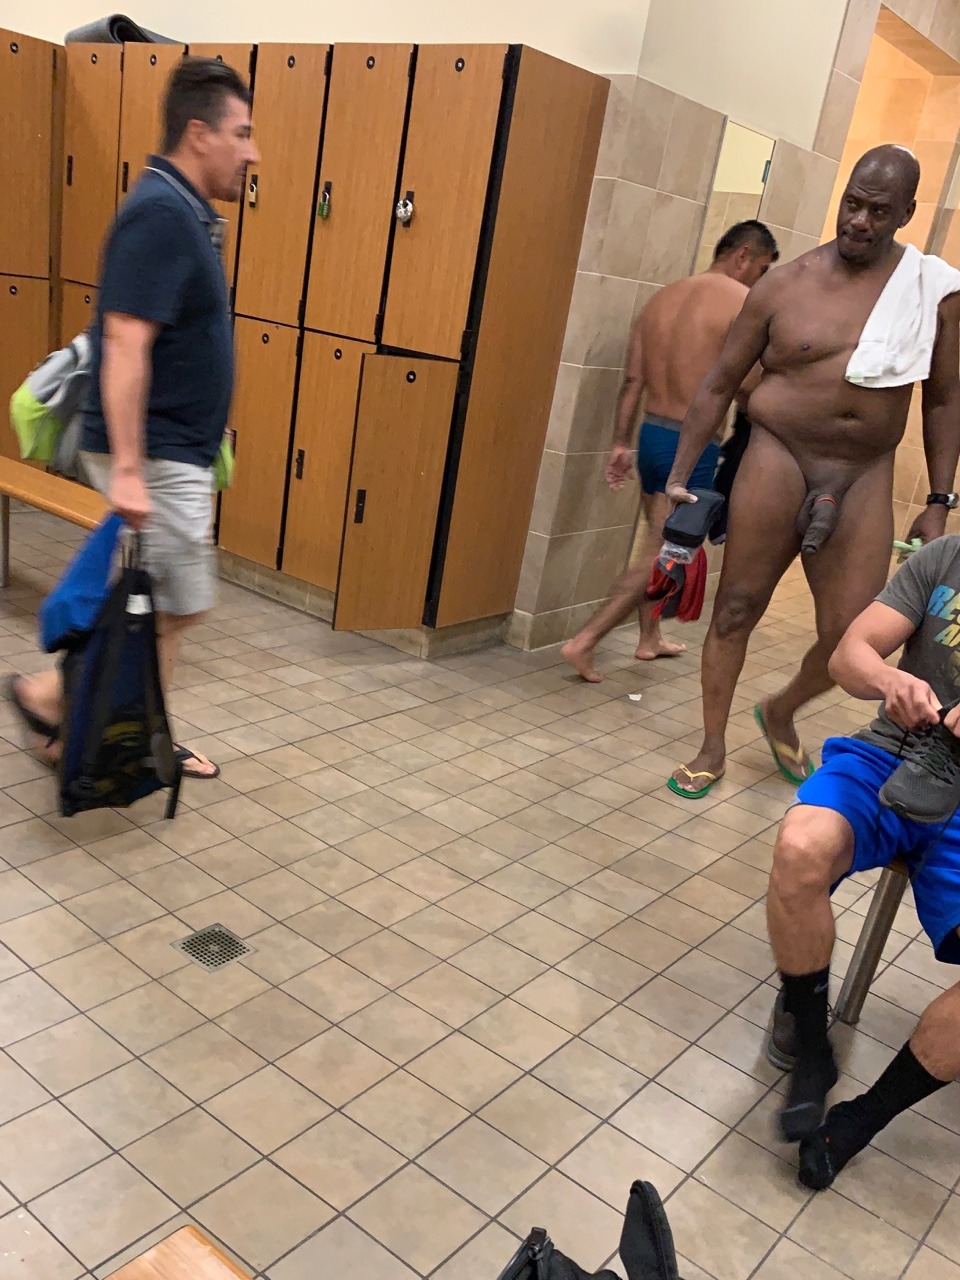 Naked men in locker rooms - 🧡 Naked Men Locker Room Pictures - Best Blond....